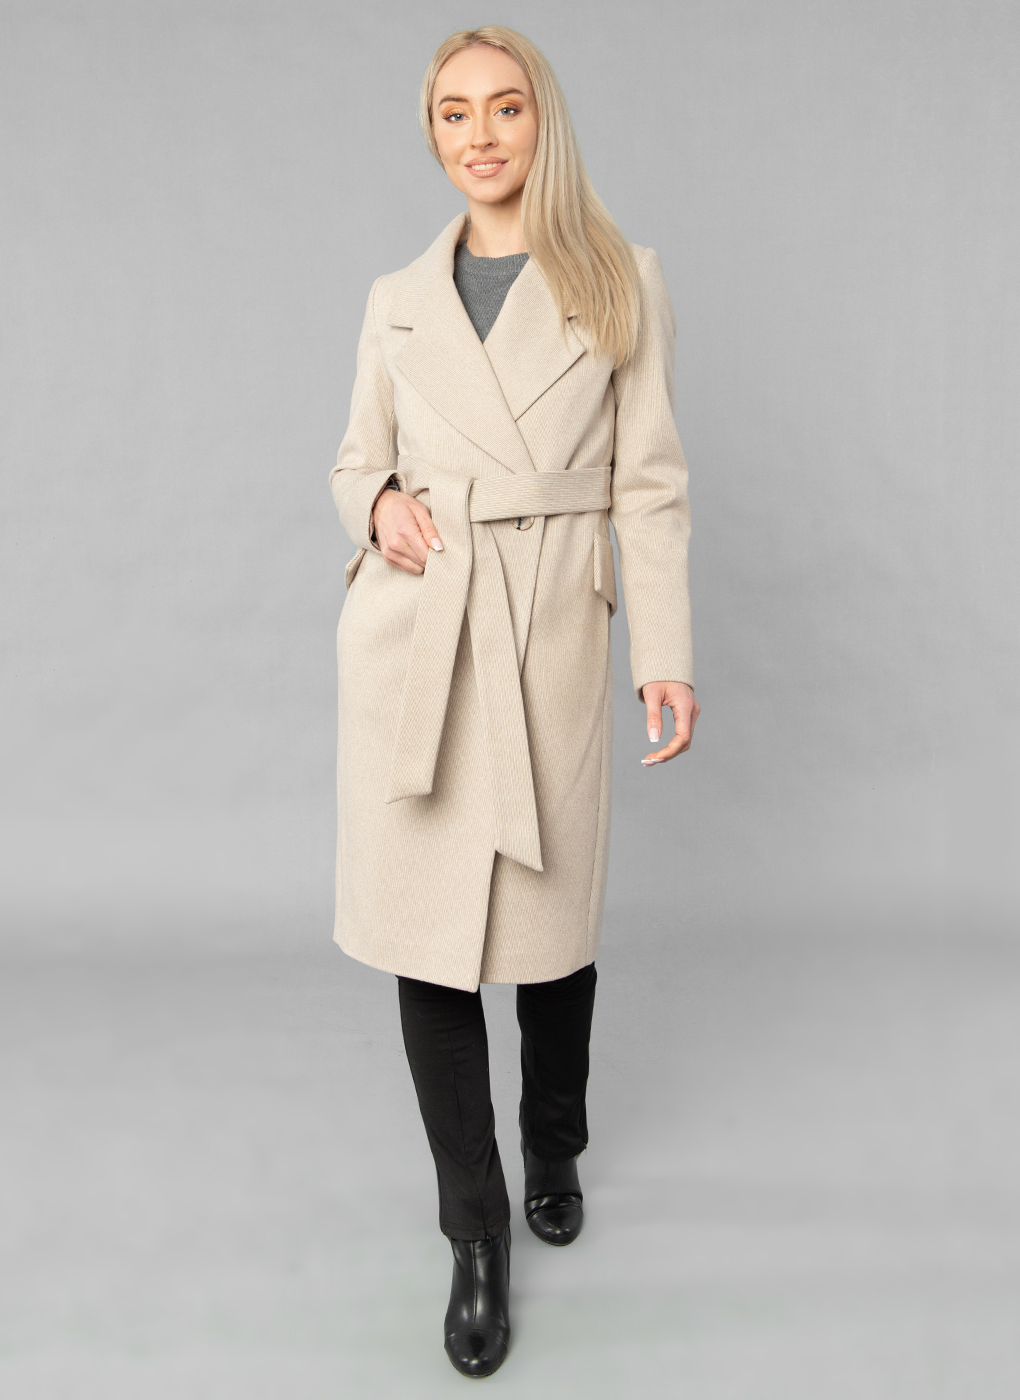 Пальто женское Sezalto 55023 бежевое 48 RU